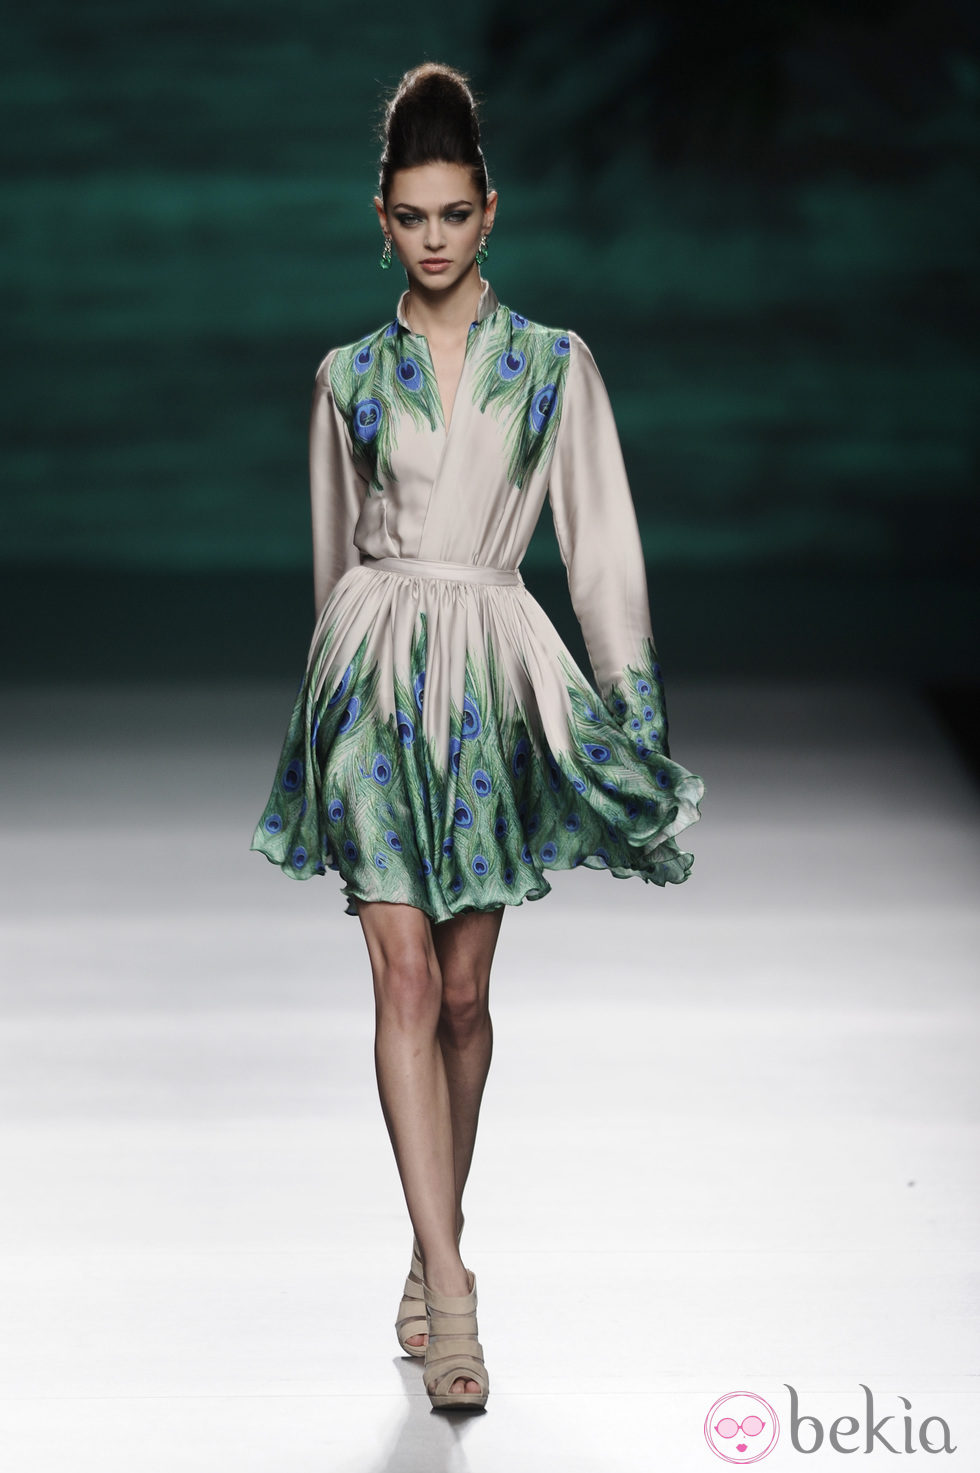 Vestido de la colección otoño/invierno 2014/2015 de Francis Montesinos en Madrid Fashion Week